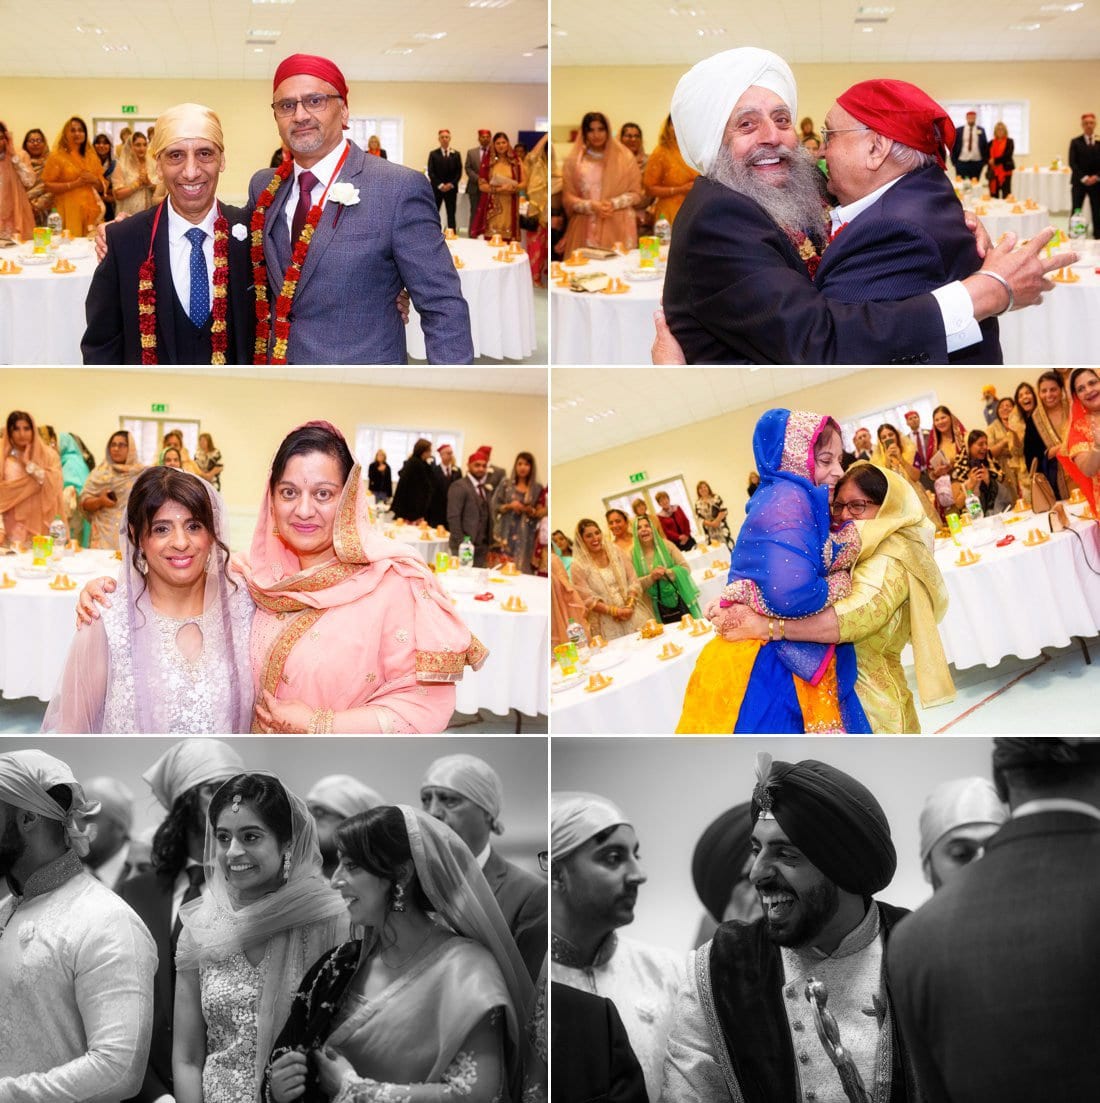 Sikh Wedding Photography at Chateau Impney 7 2